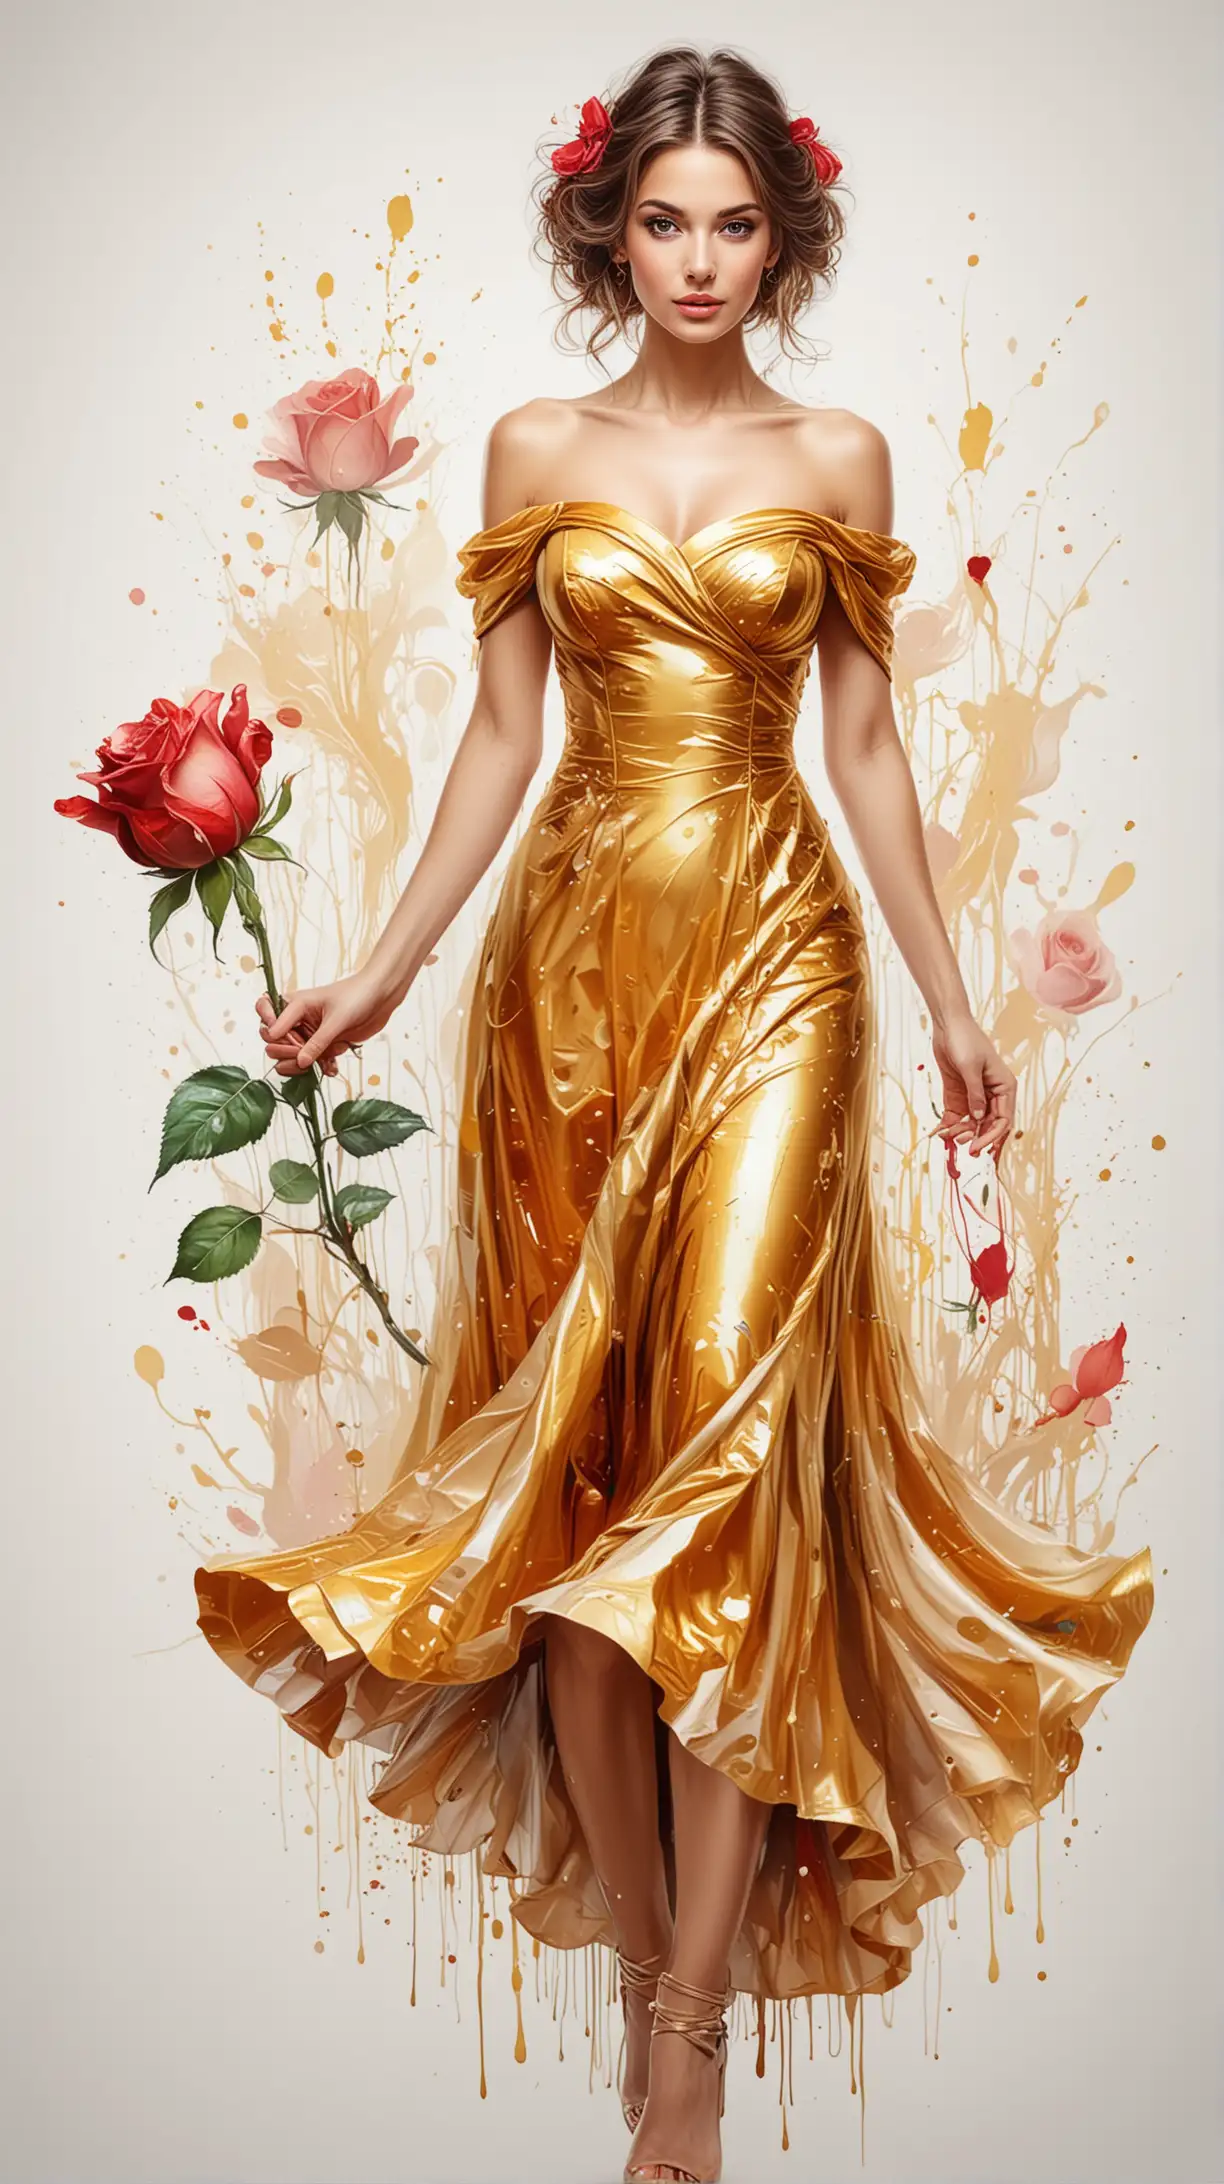 Golden Dress Rose Girl Amidst Multicolored Abstract Splendor